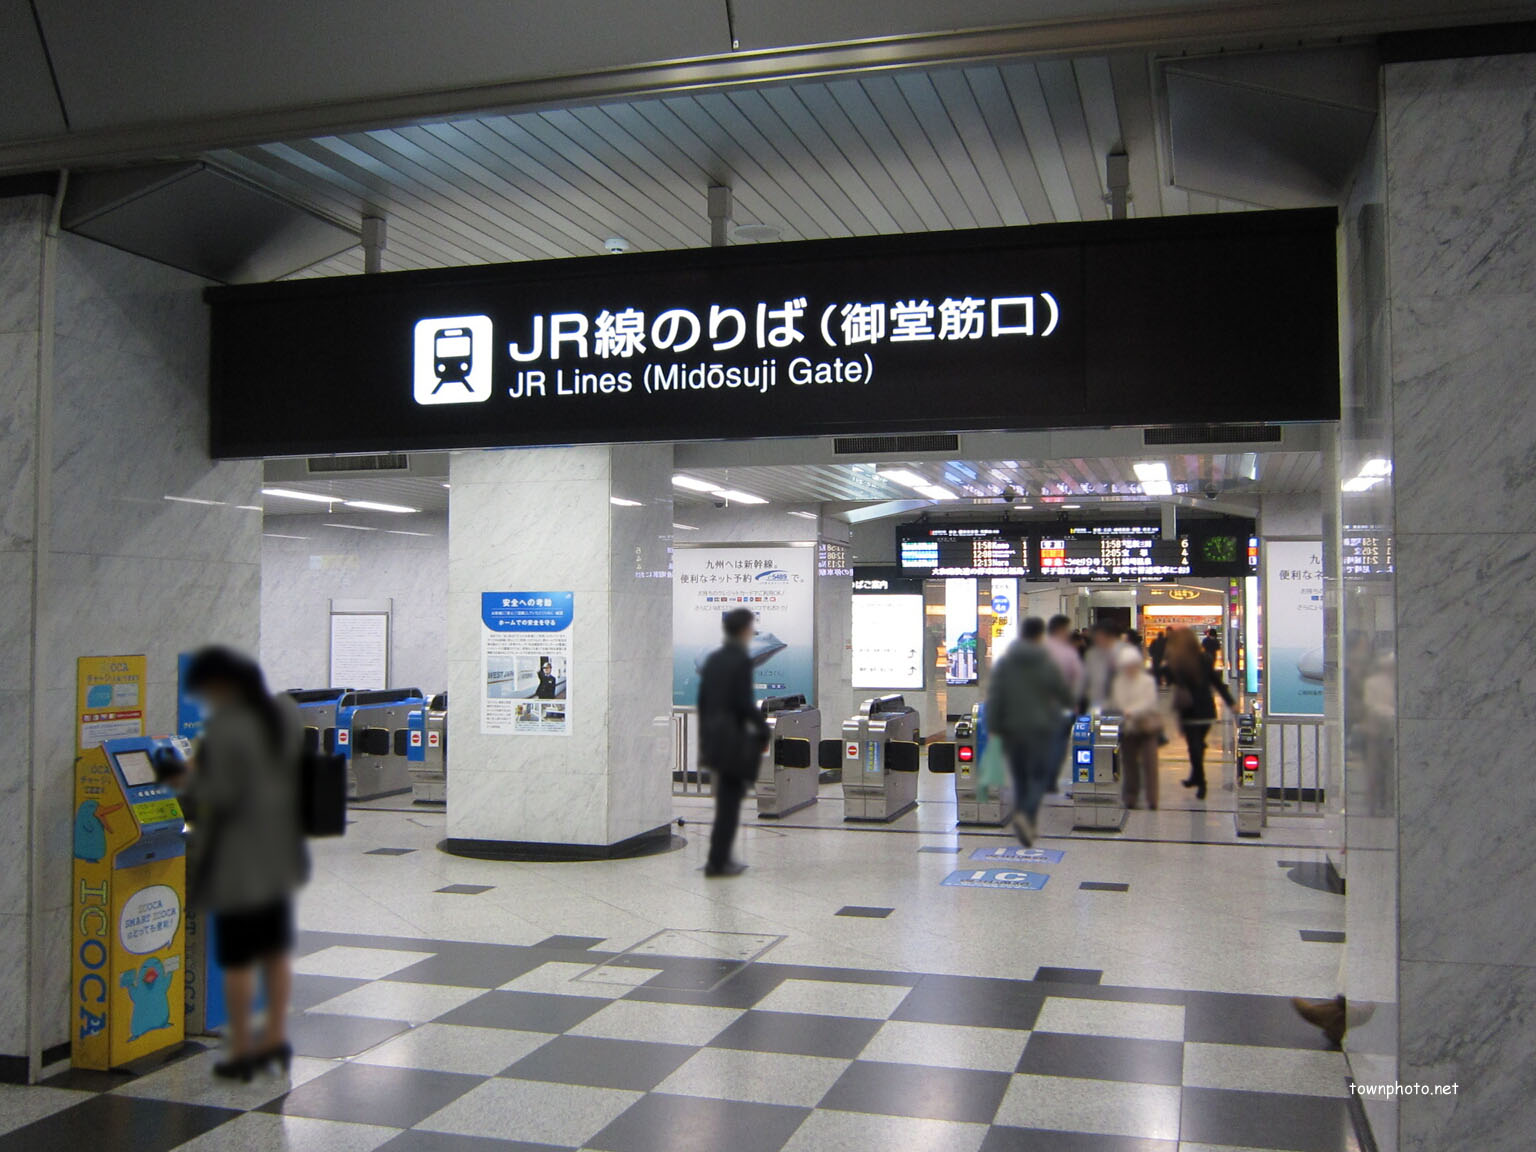 大阪 駅 jr 高速 バス ターミナル